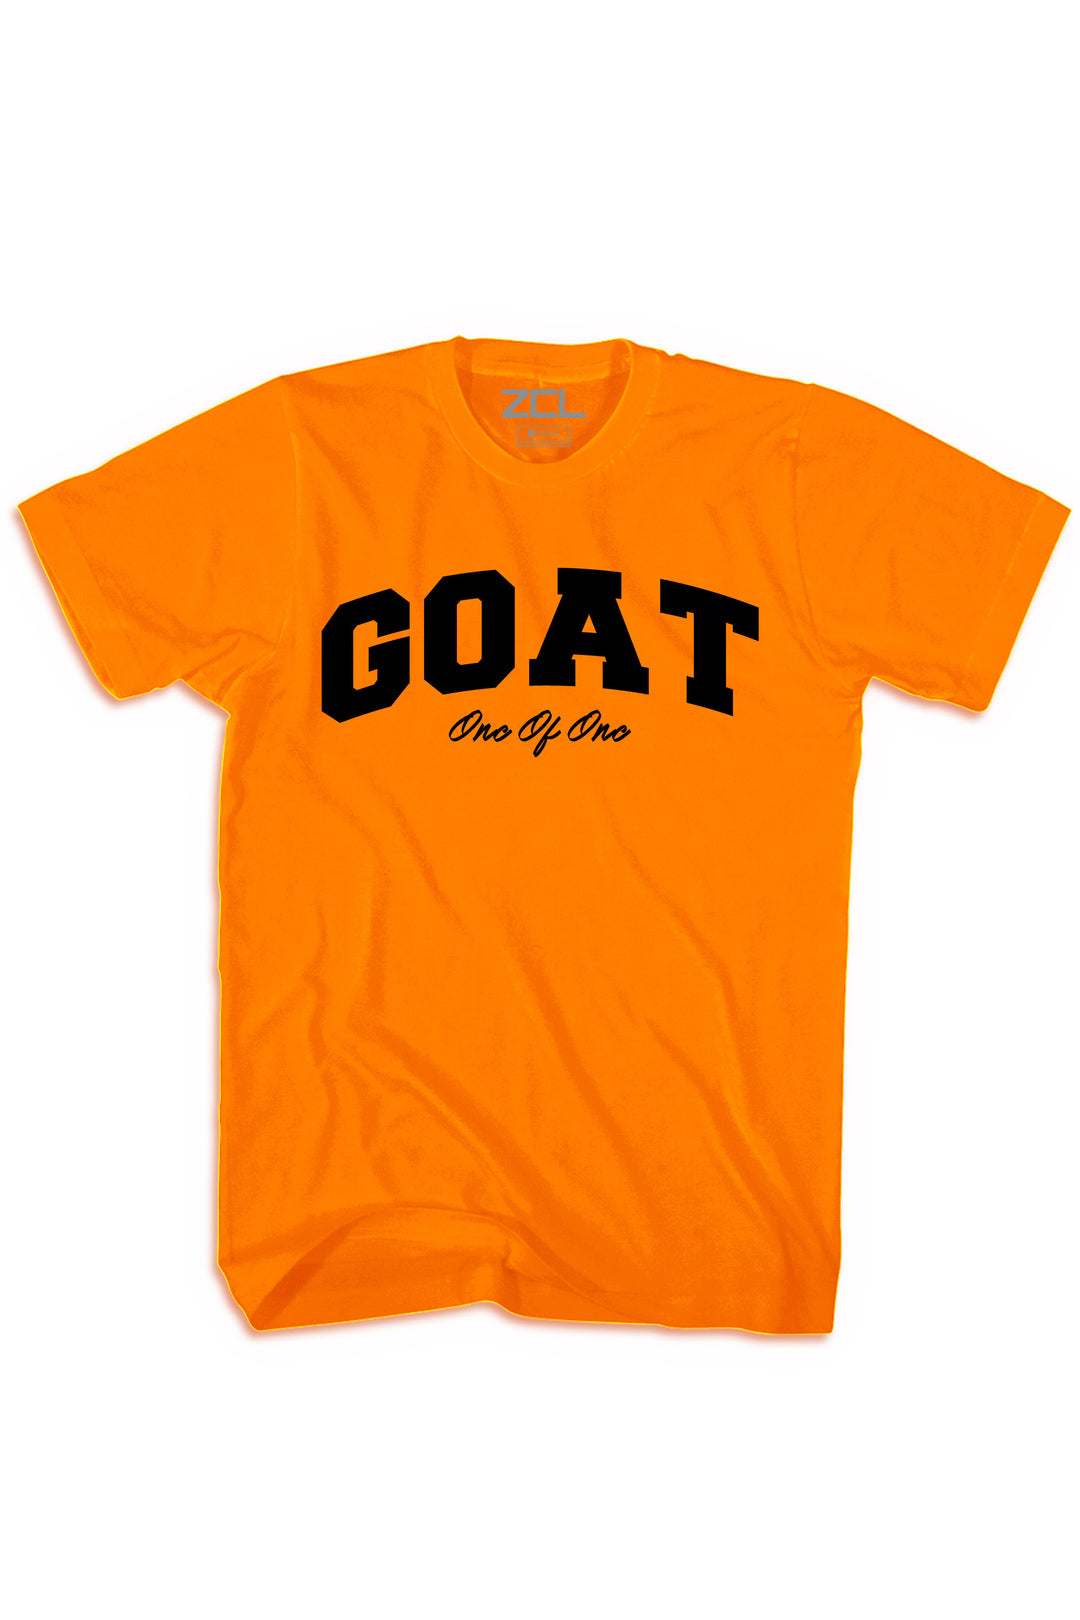 Goat Tee (Black Logo) - Zamage